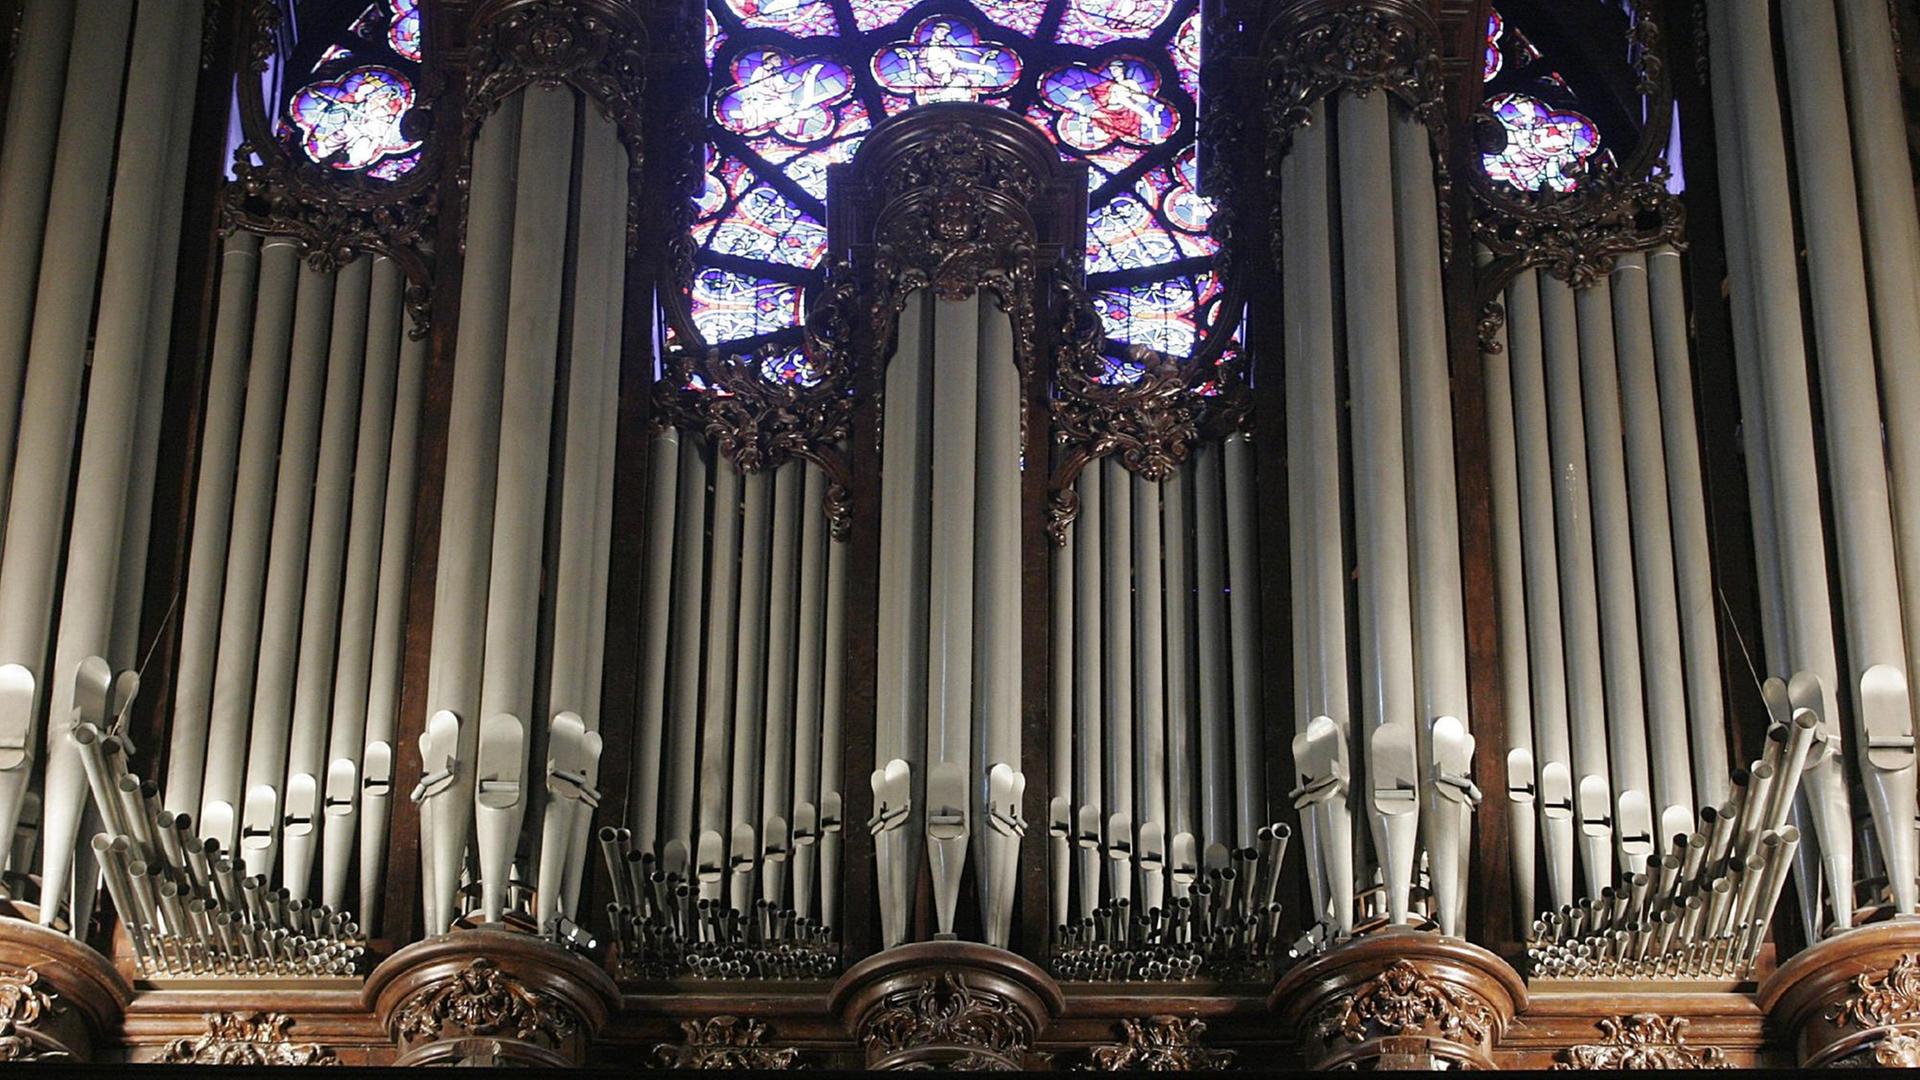 Vor einem rosettenförmigen Kirchenfenster aus blauem, rotem und lilafarbenem Glas stehen viele metallene Orgelpfeifen, eingebundem von reich verziertem Holz.